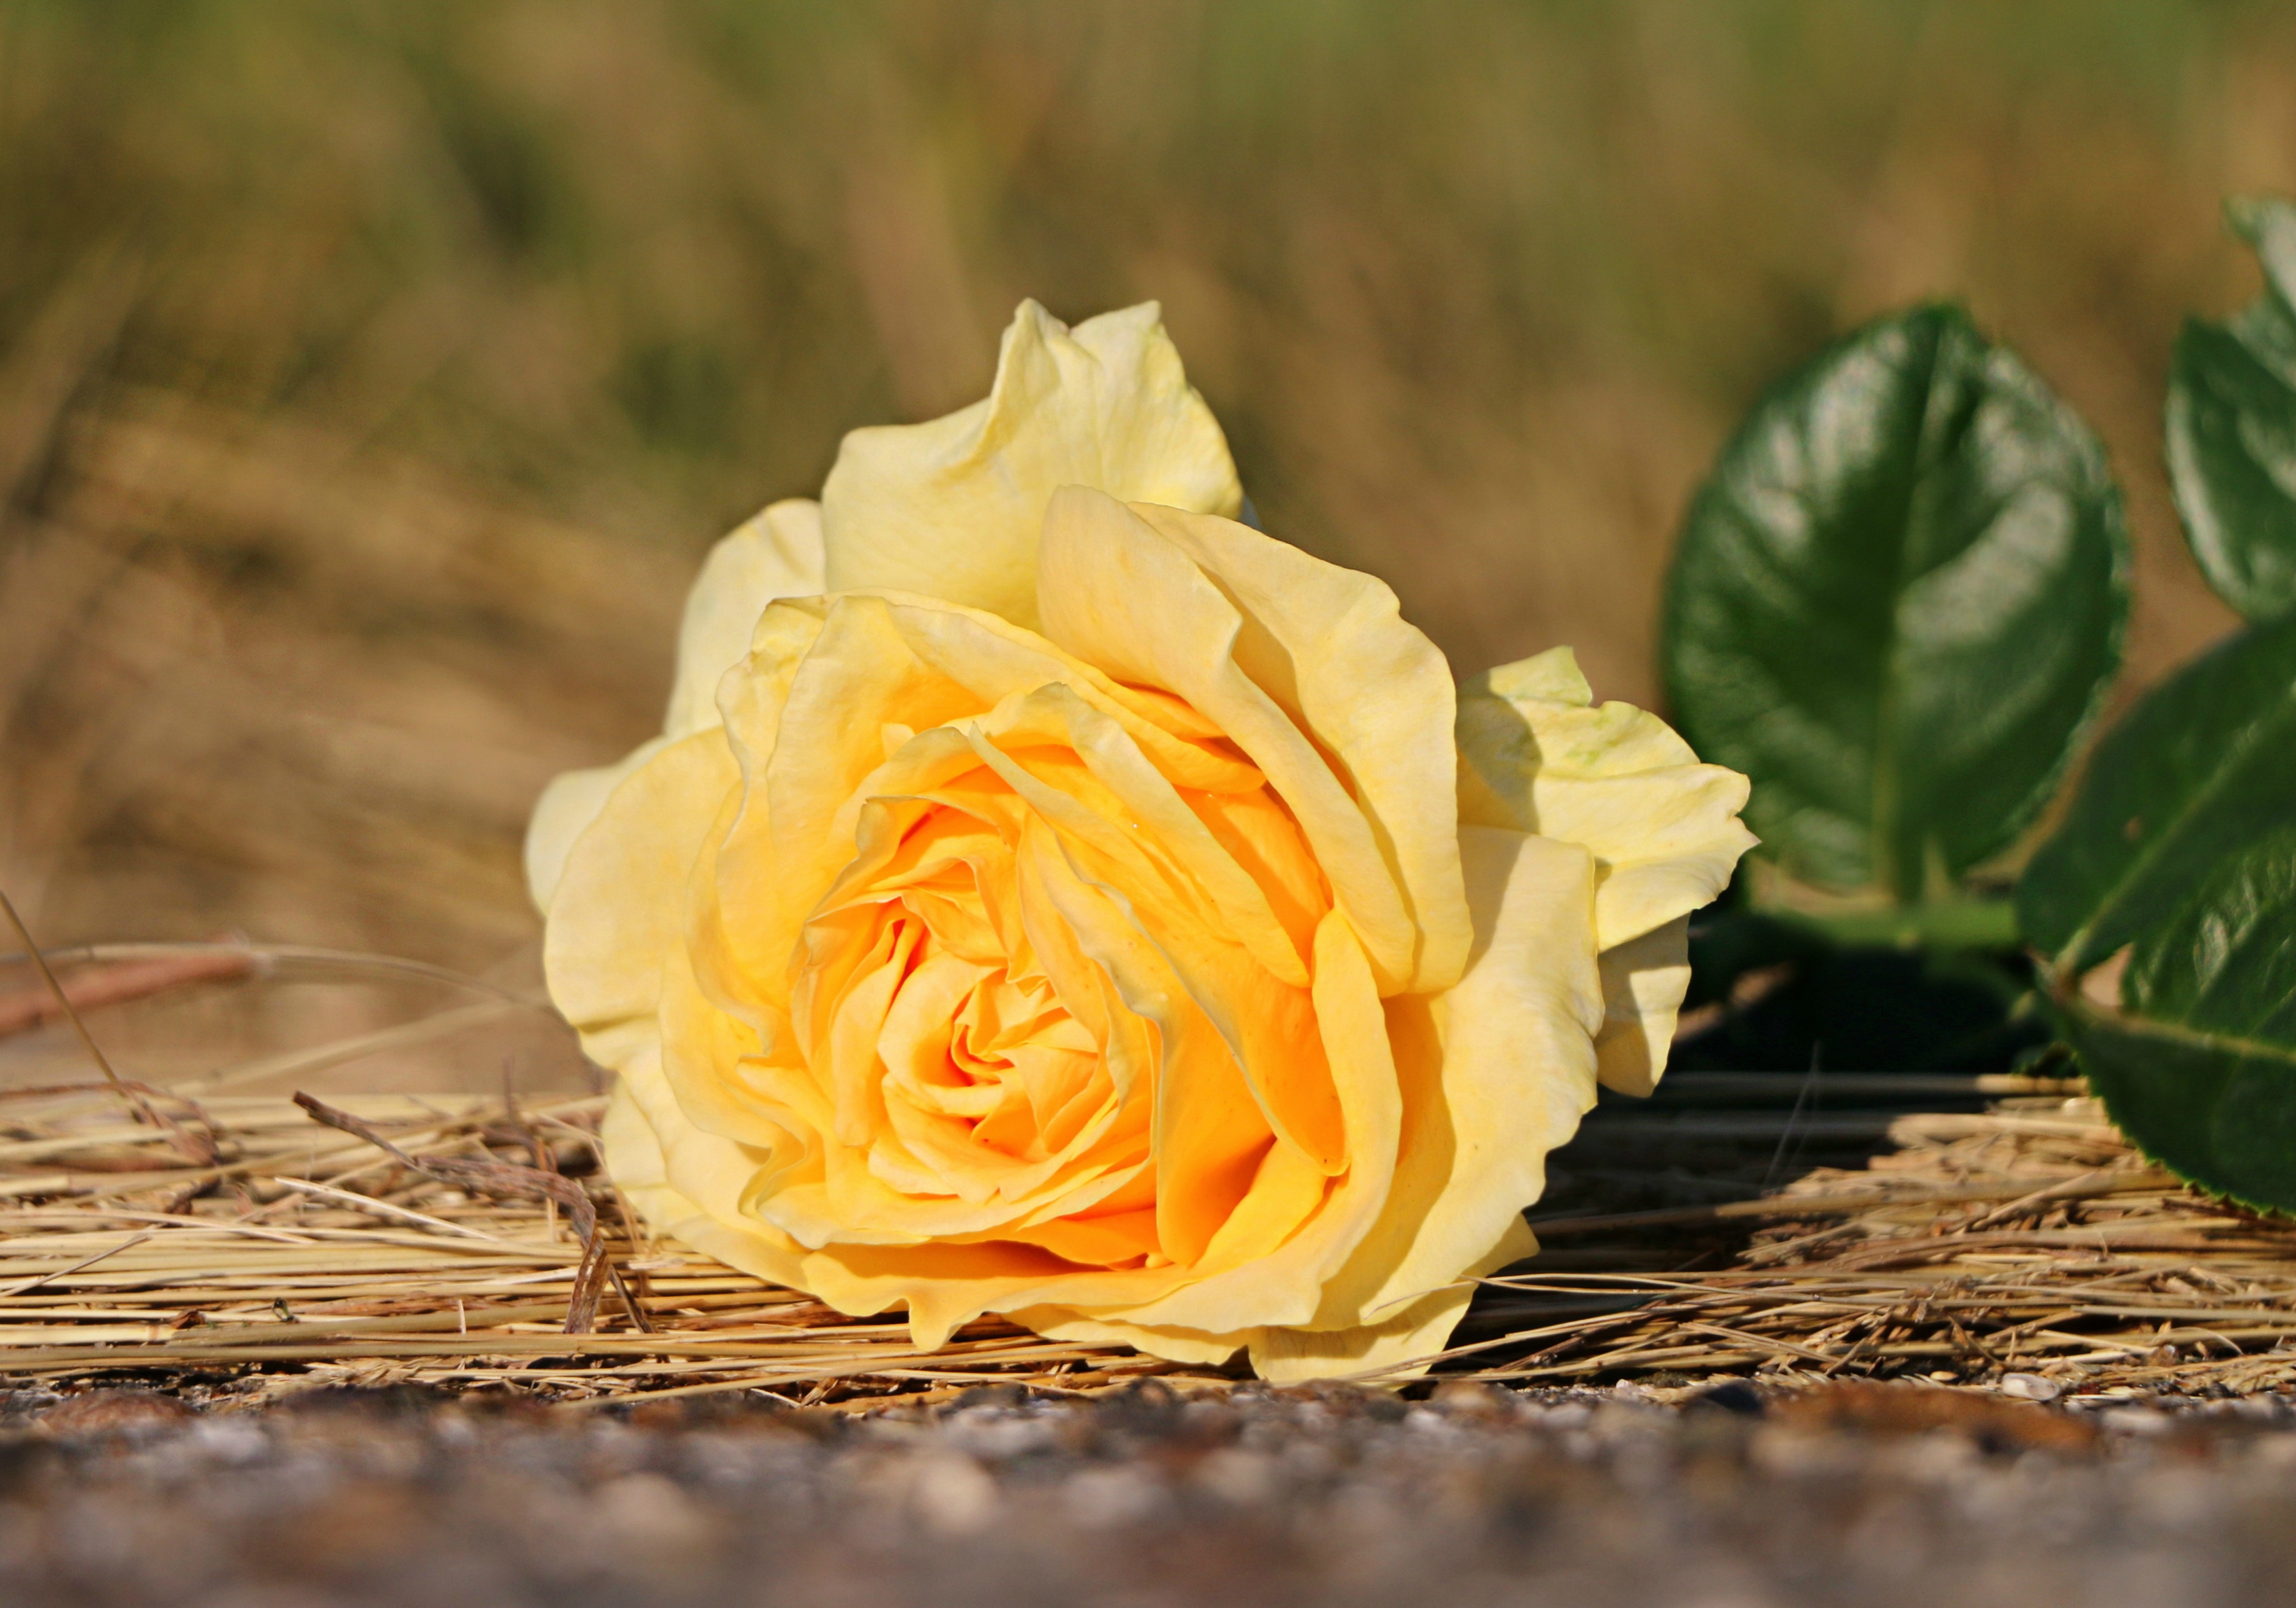 Скачать картинку Роза, Желтый Цветок, Земля/природа, Желтая Роза, Флауэрсы в телефон бесплатно.